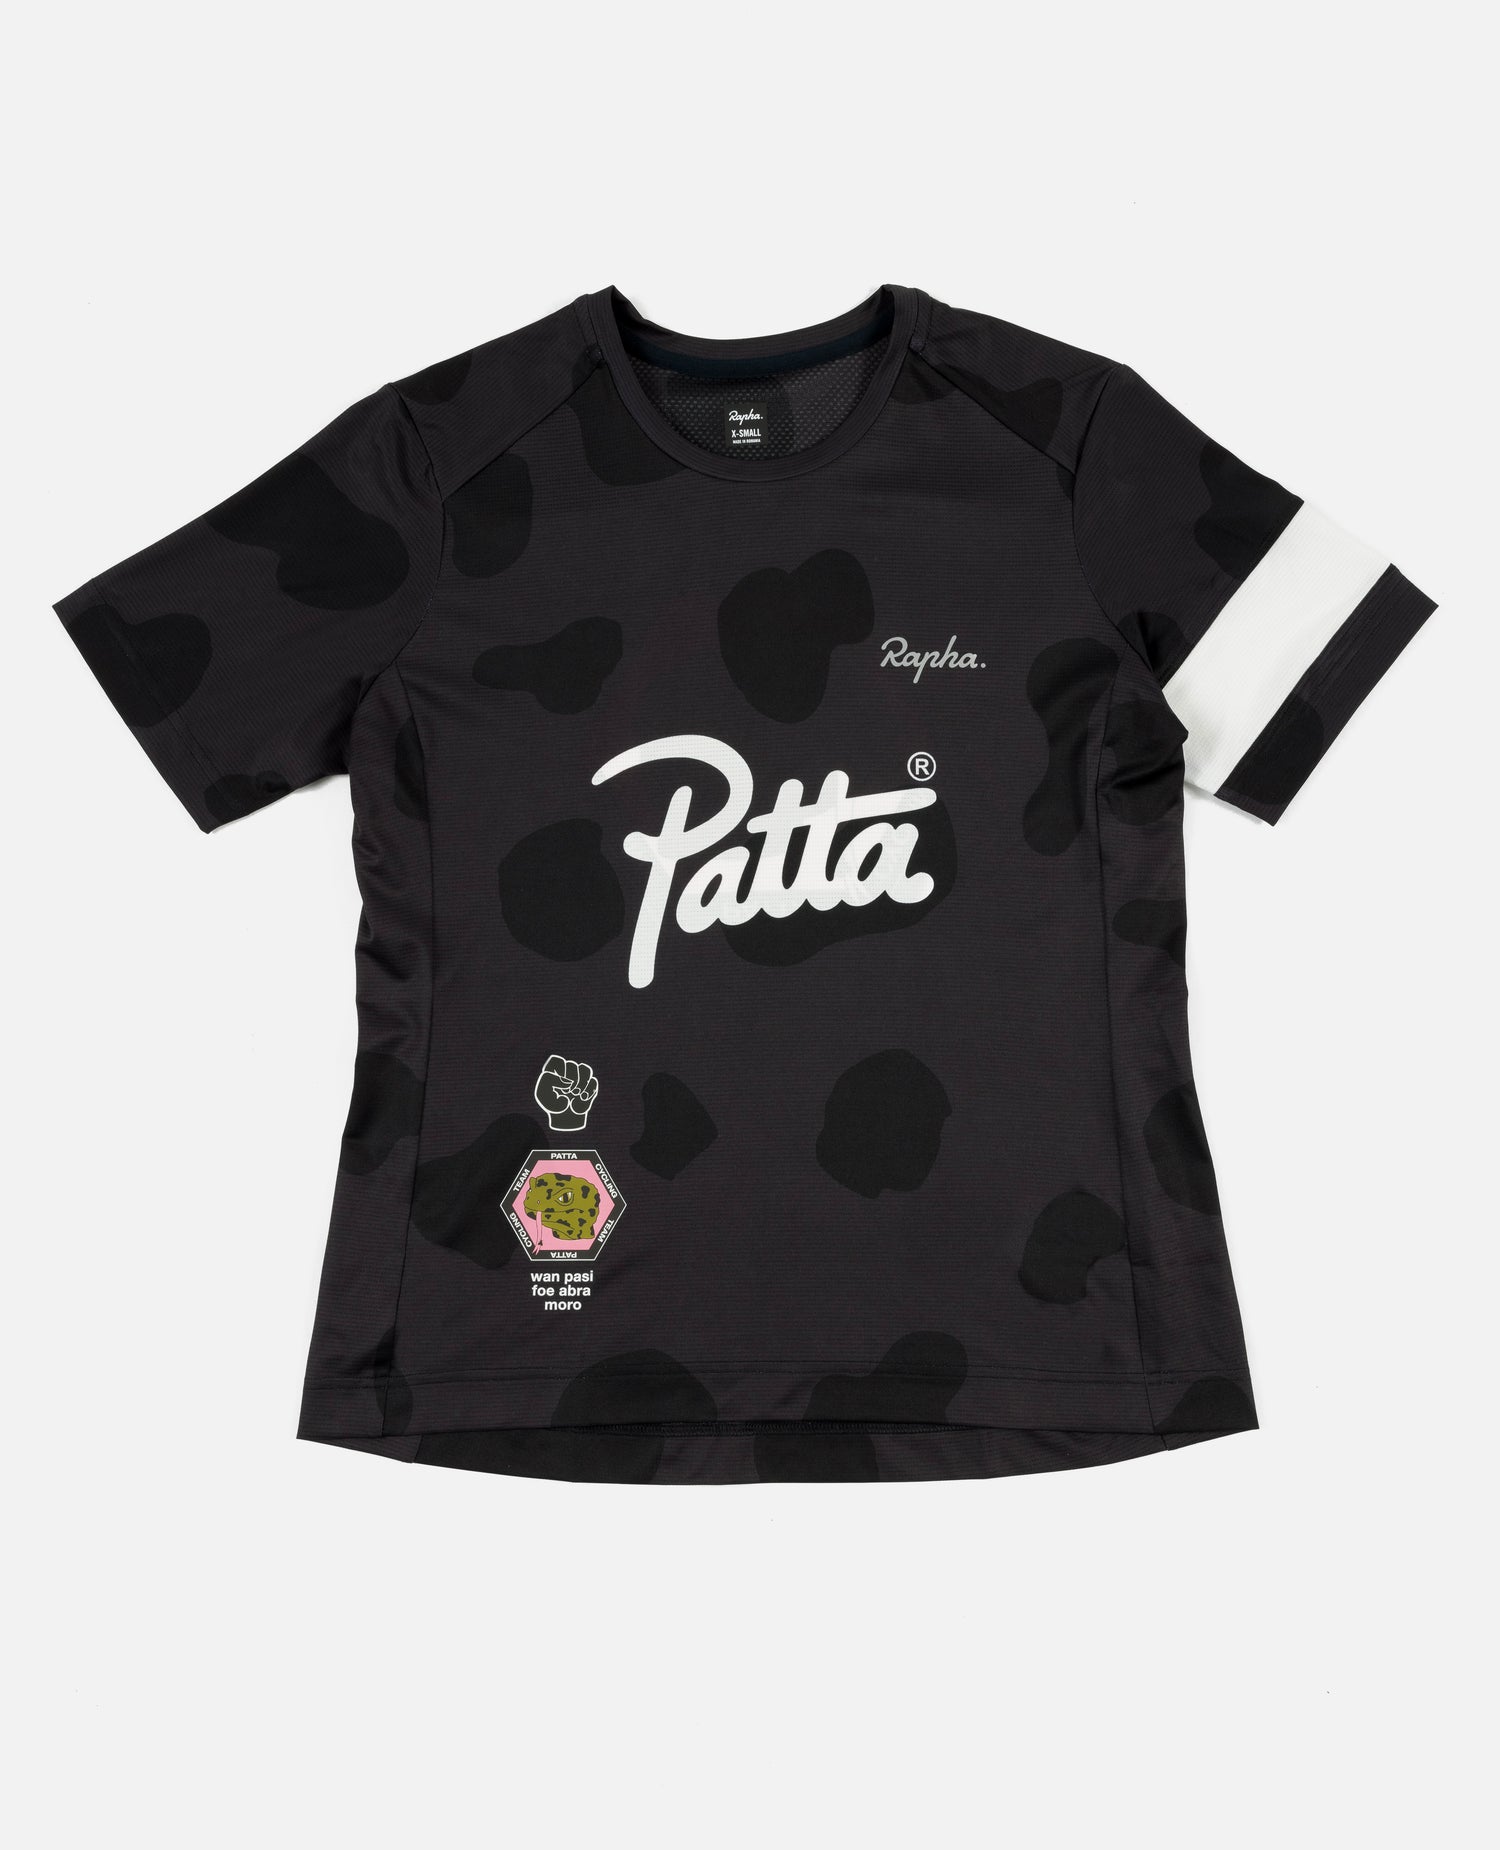 T-shirt technique Patta x Rapha pour femmes (multi)